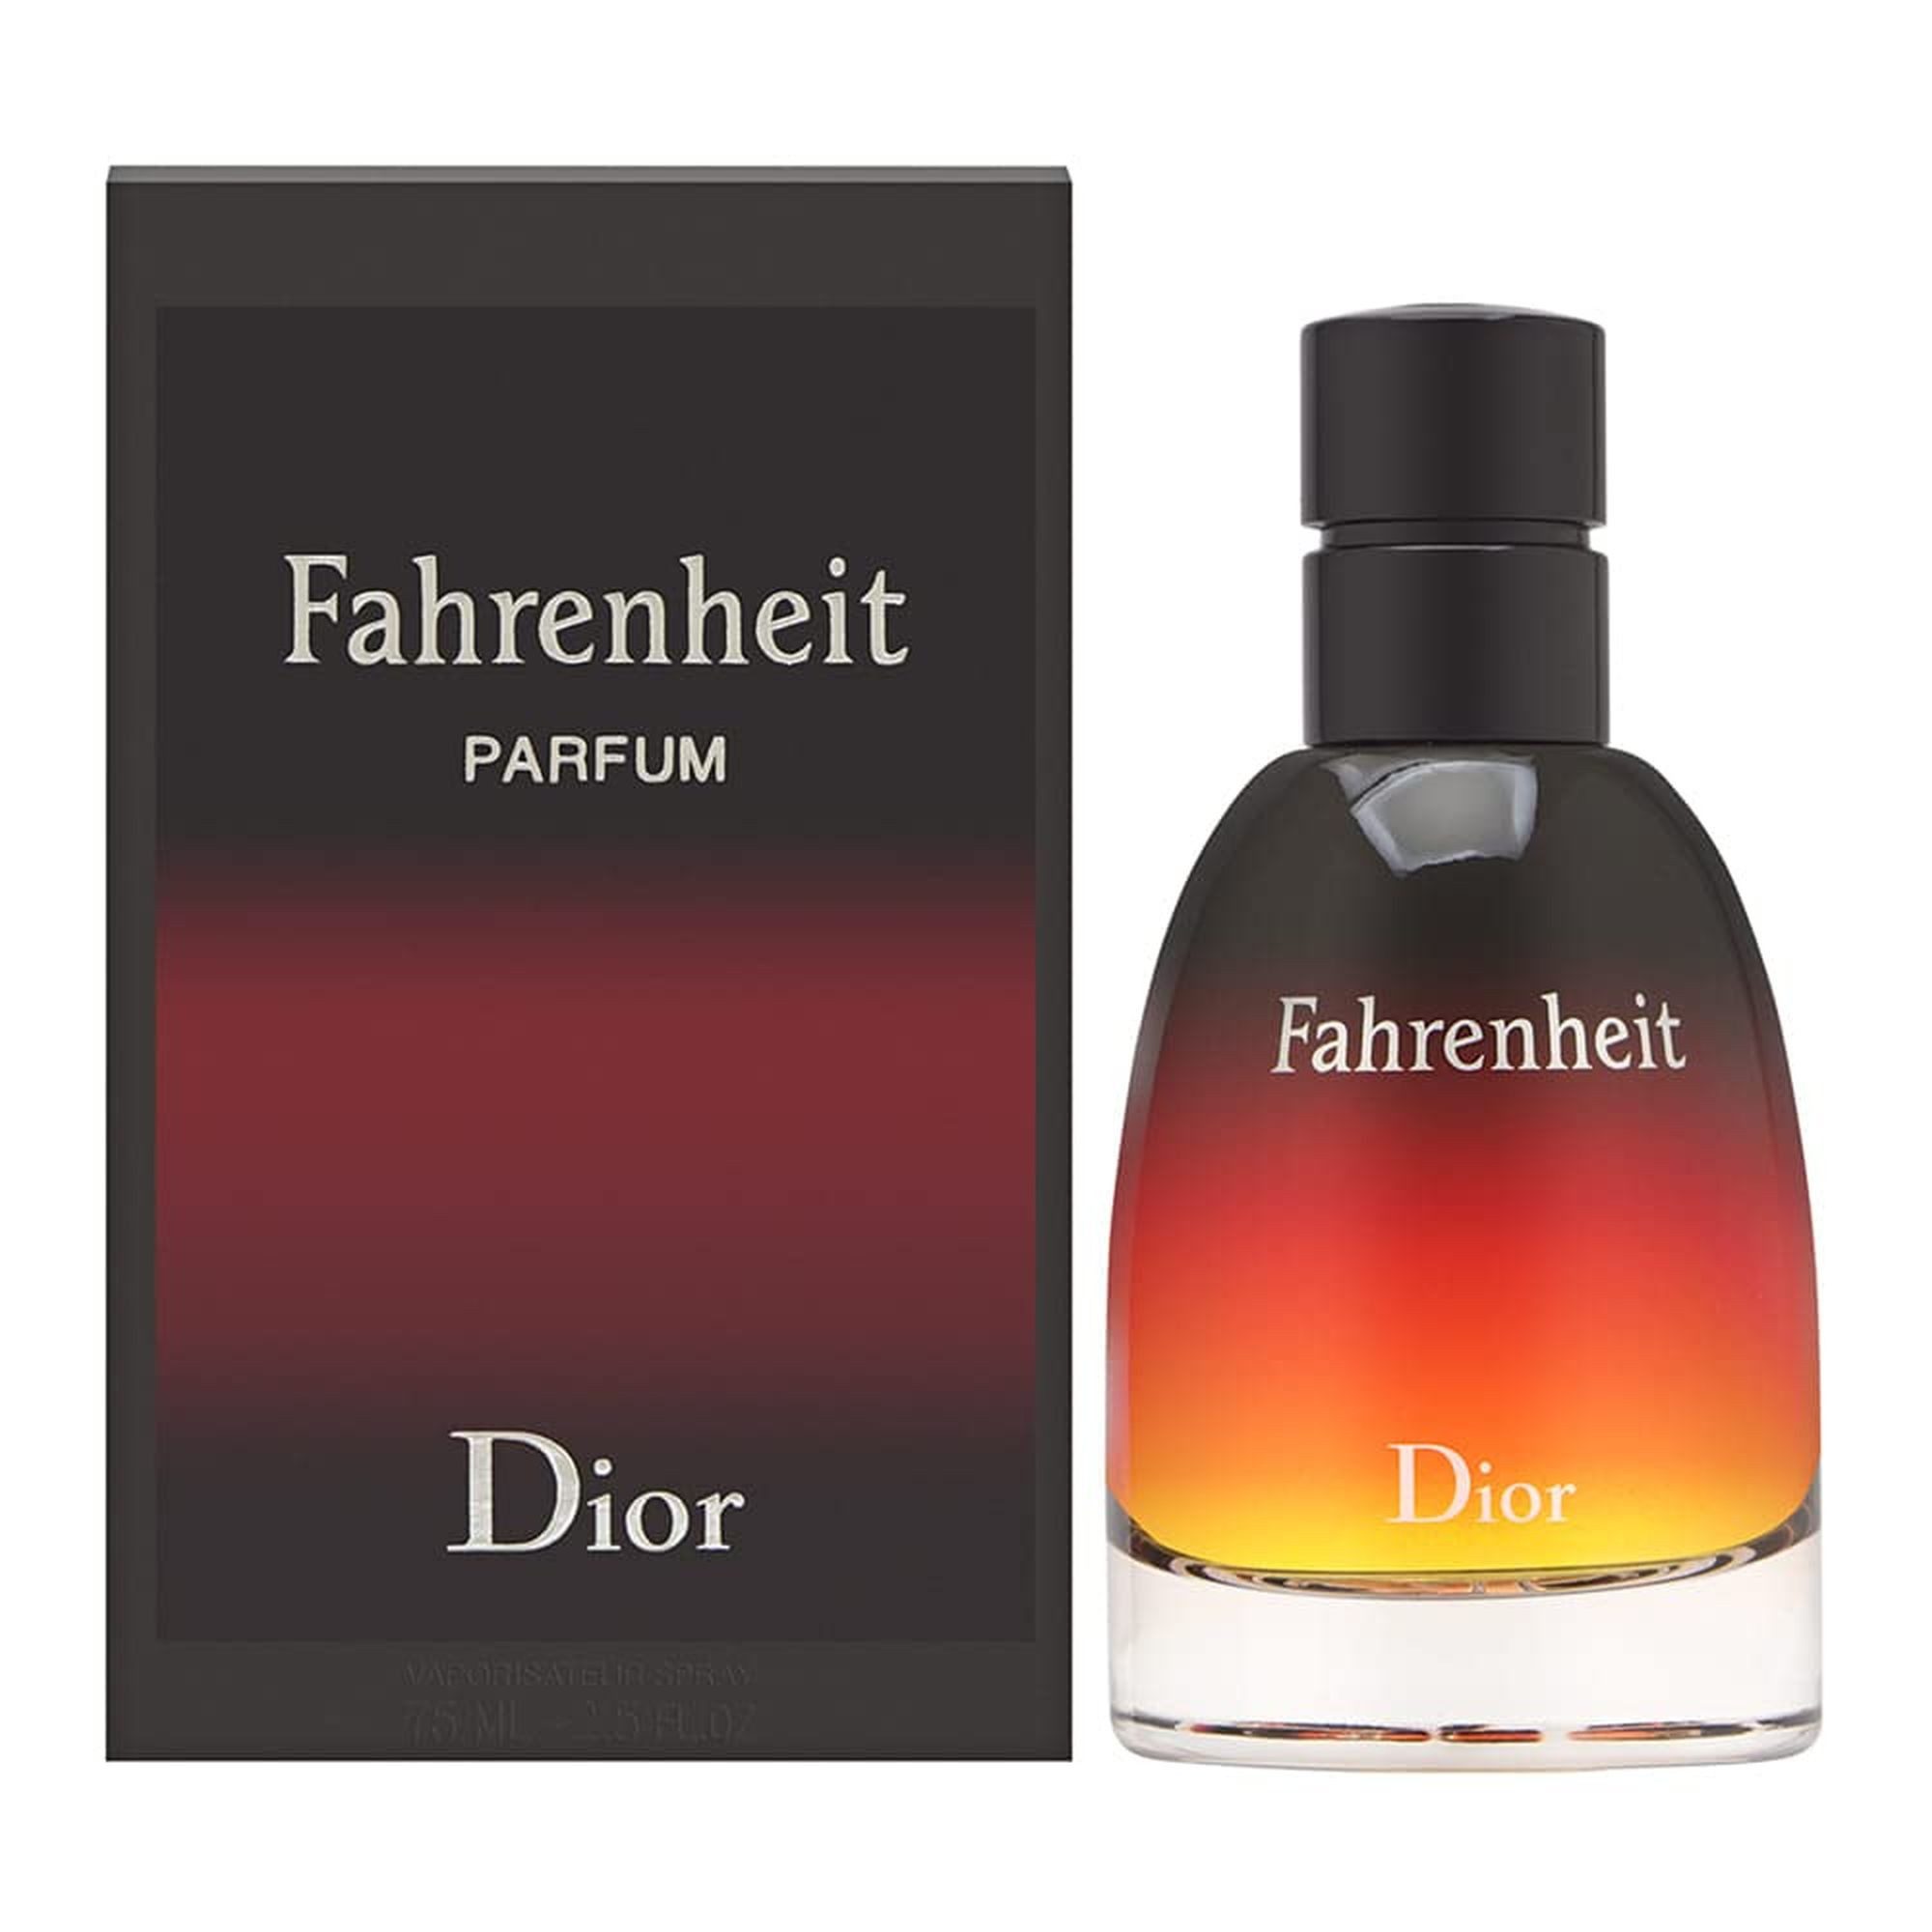 Dior Eau de Parfum Fahrenheit Le Parfum